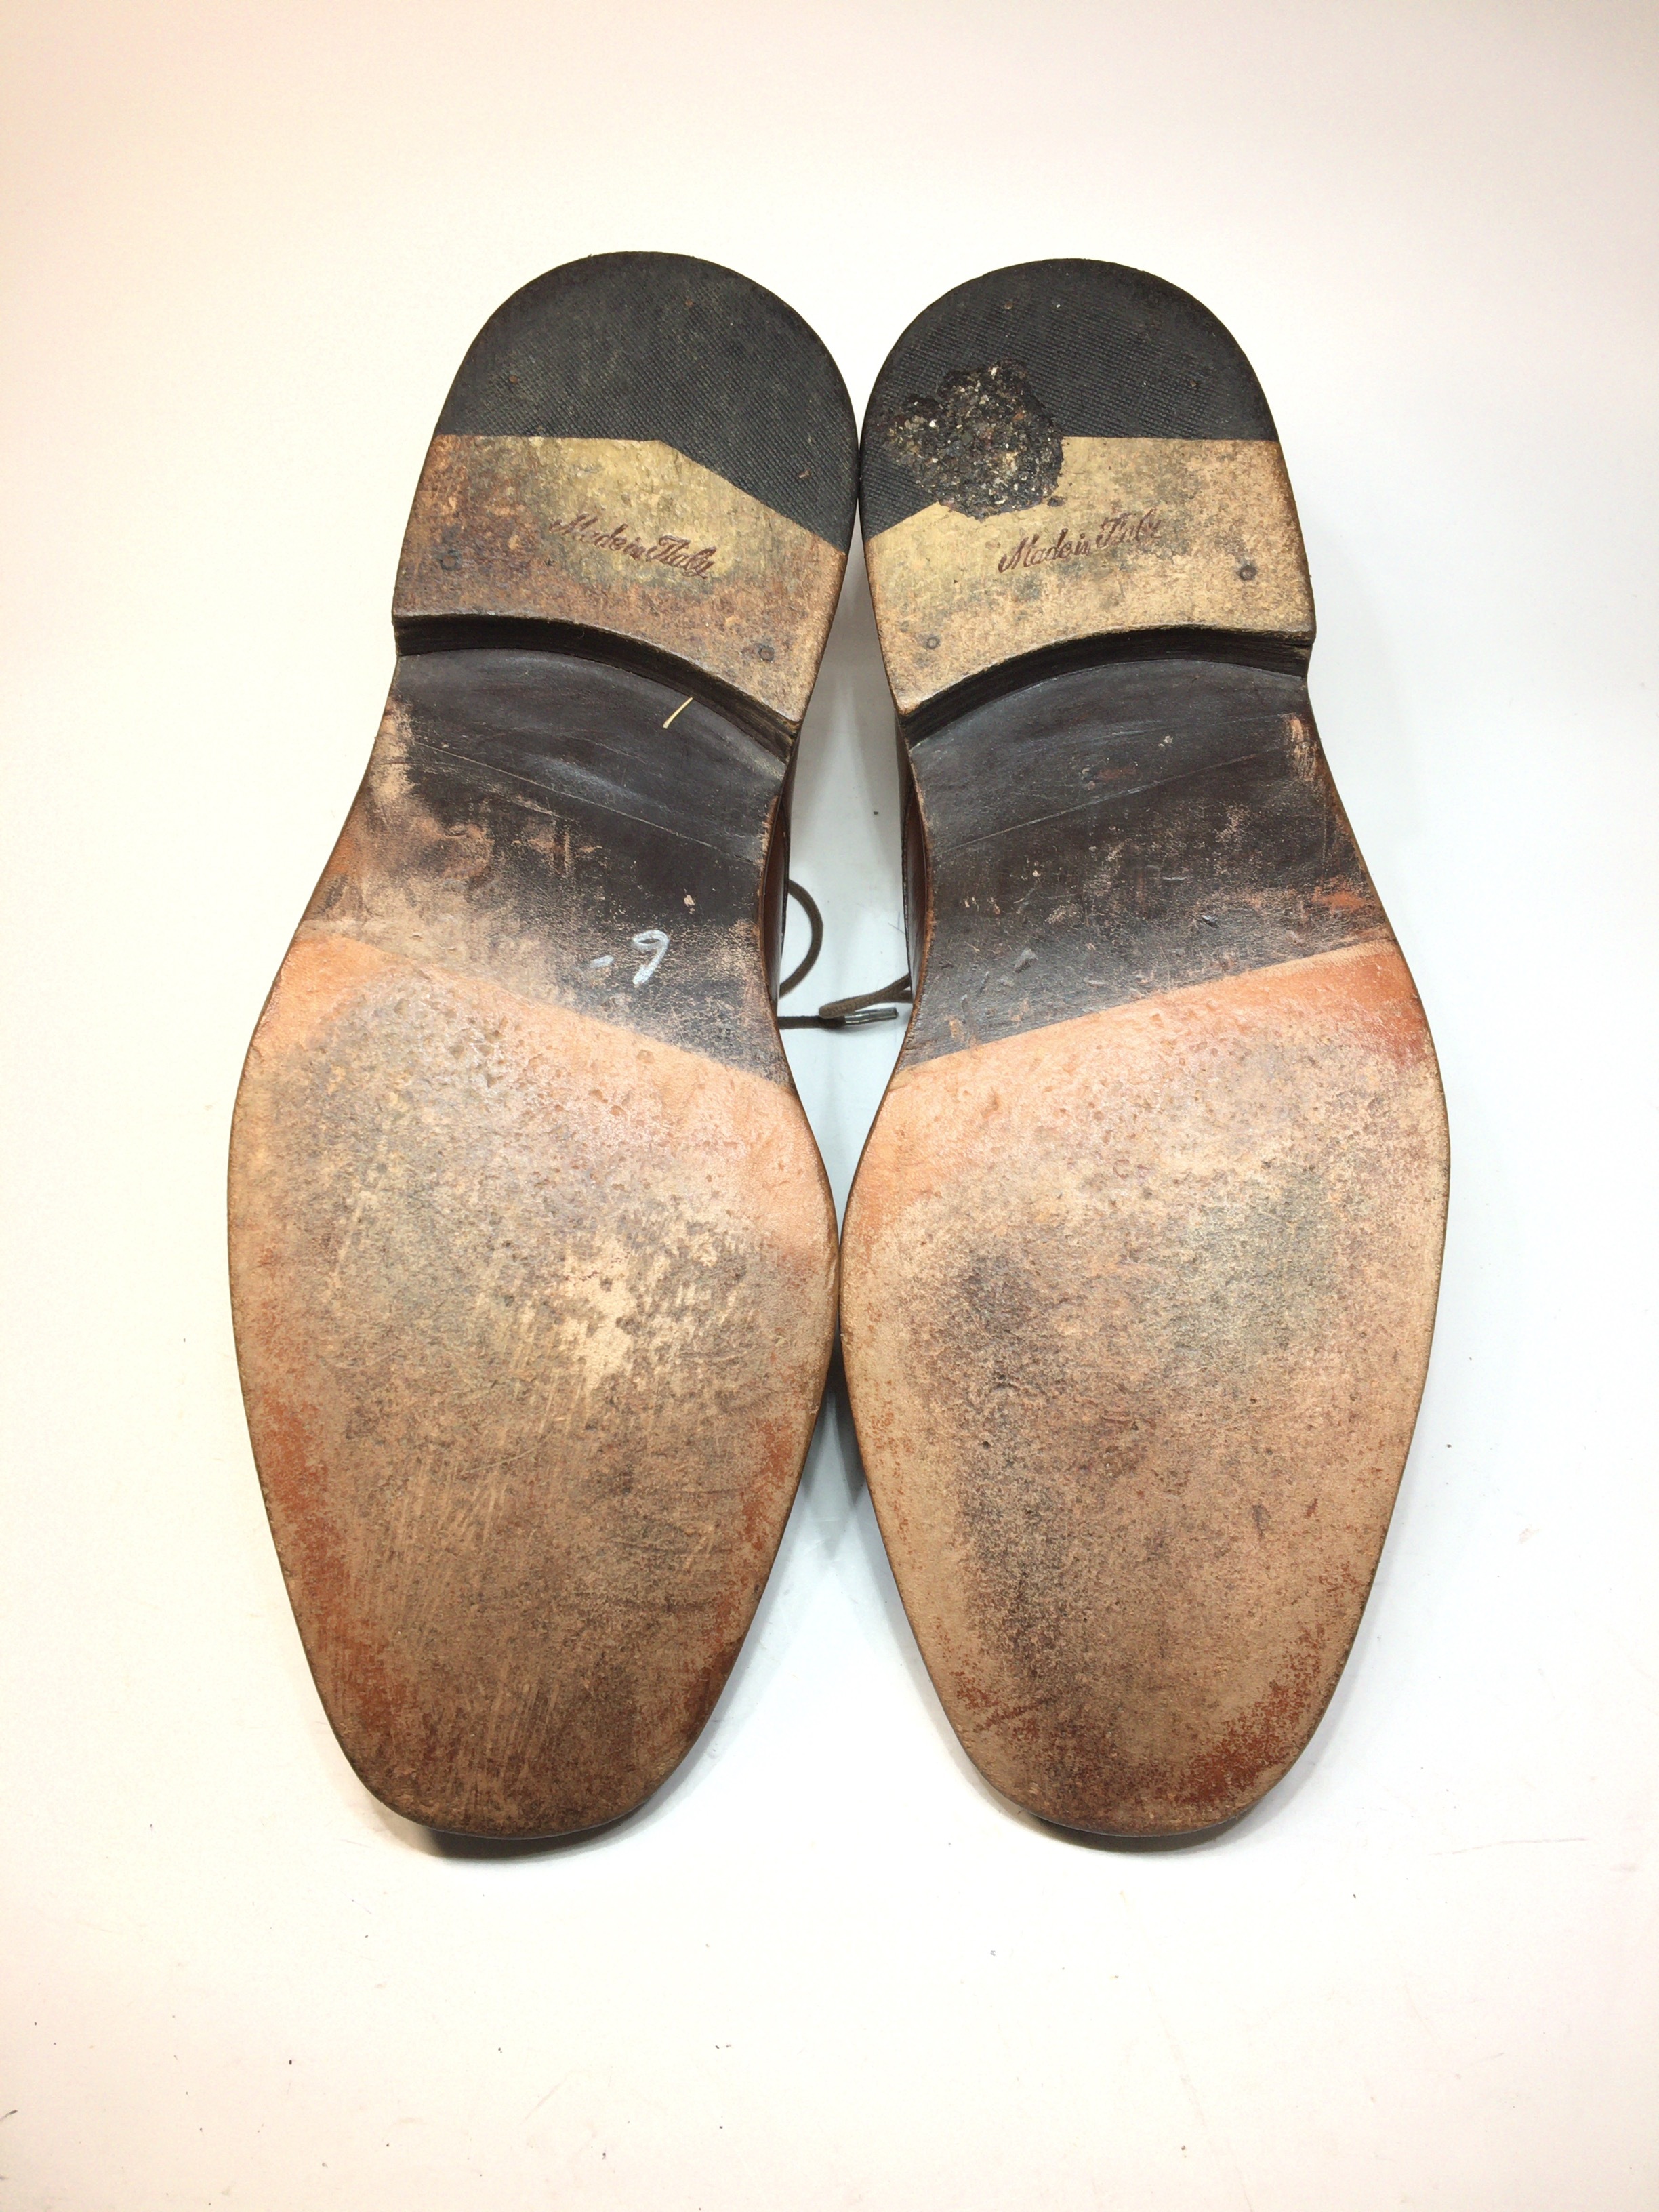 ジョンストンアンドマーフィー JOHNSTON&MURPHY ストレートチップ 27.5センチ | 中古靴・革靴・ブーツ通販専門店